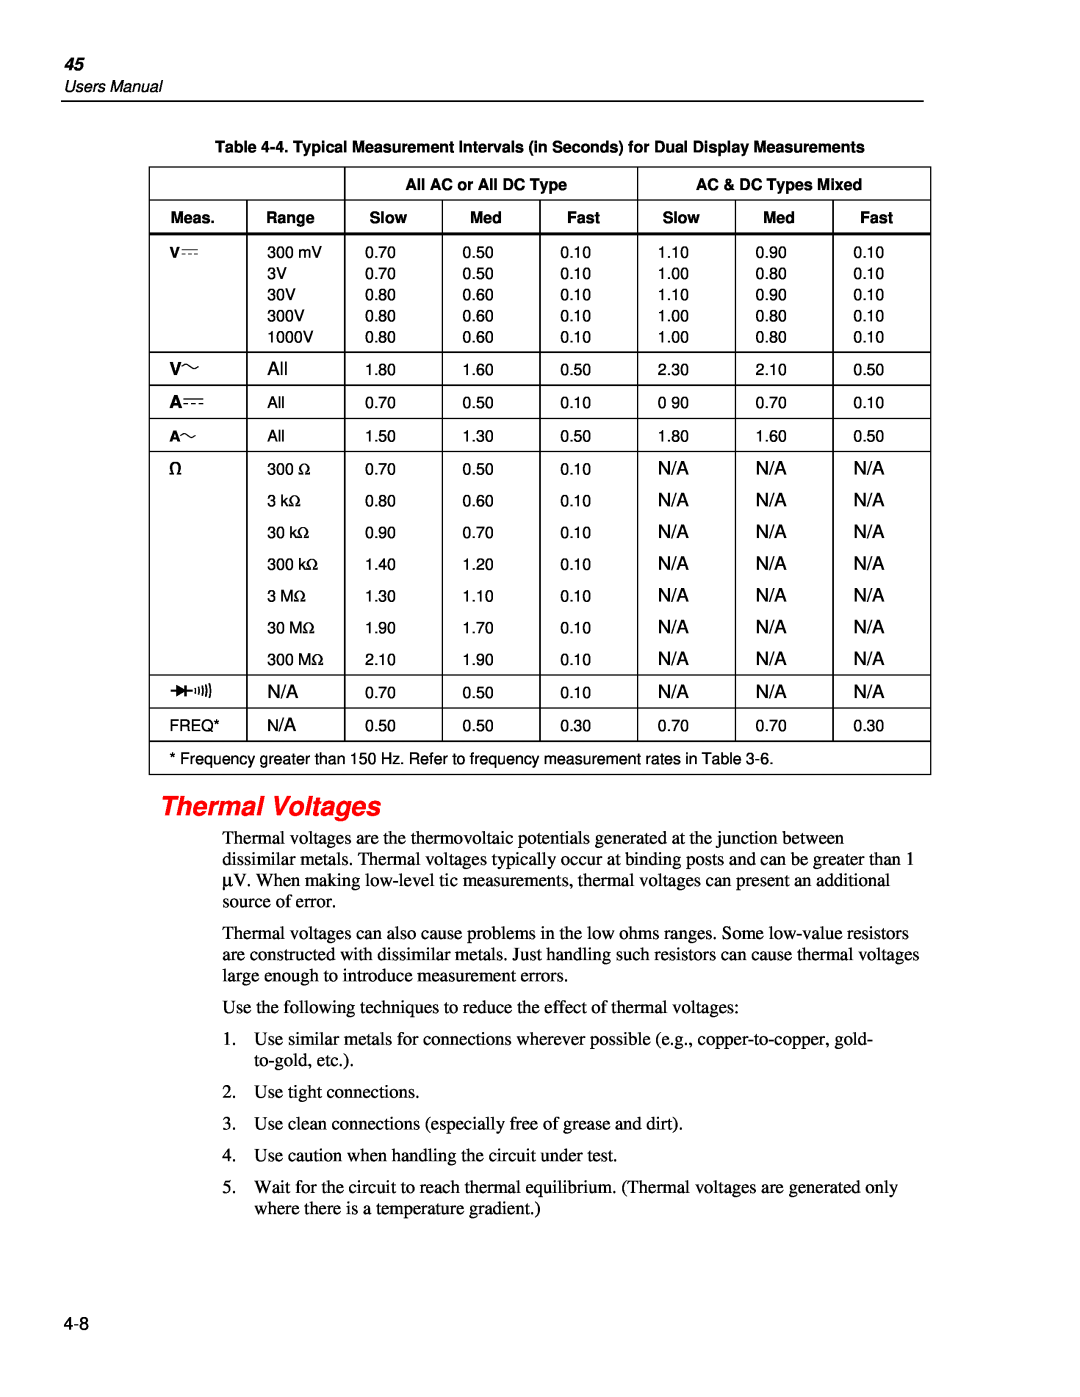 Fluke 45 user manual Thermal Voltages 